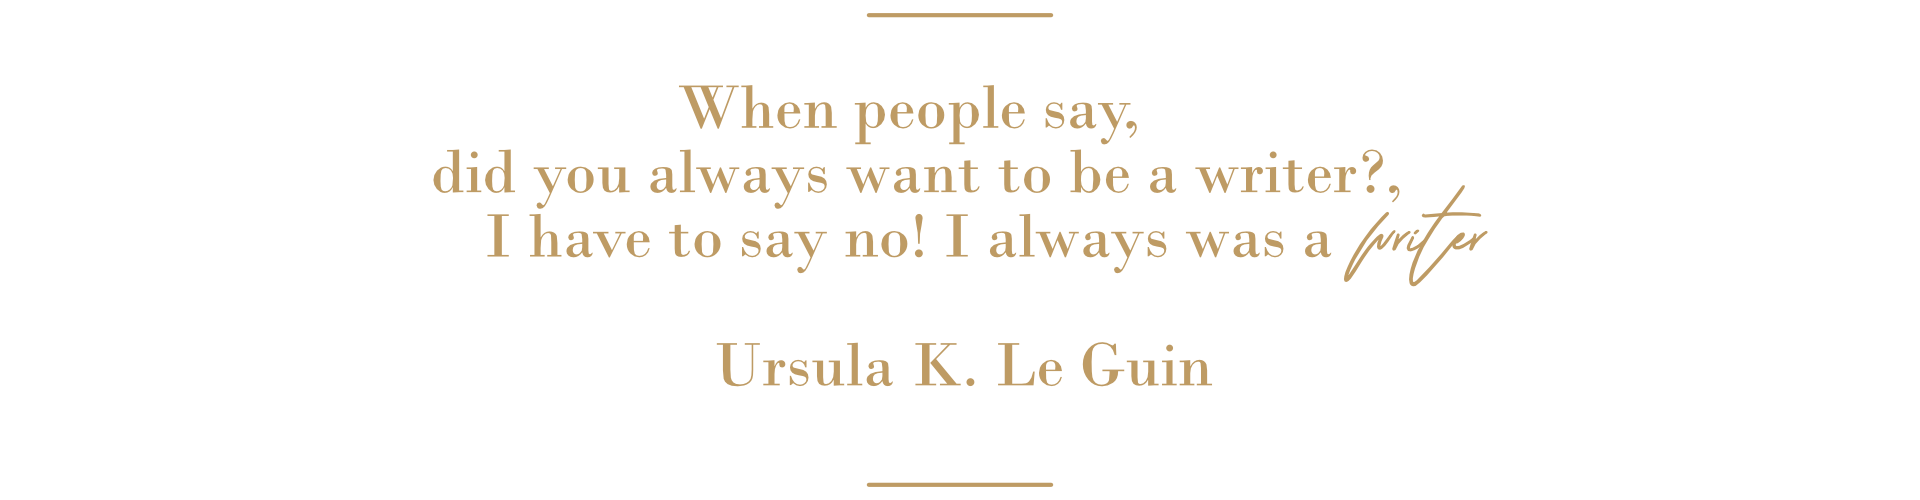 Zitat von Ursula K. Le Guin über Autoren